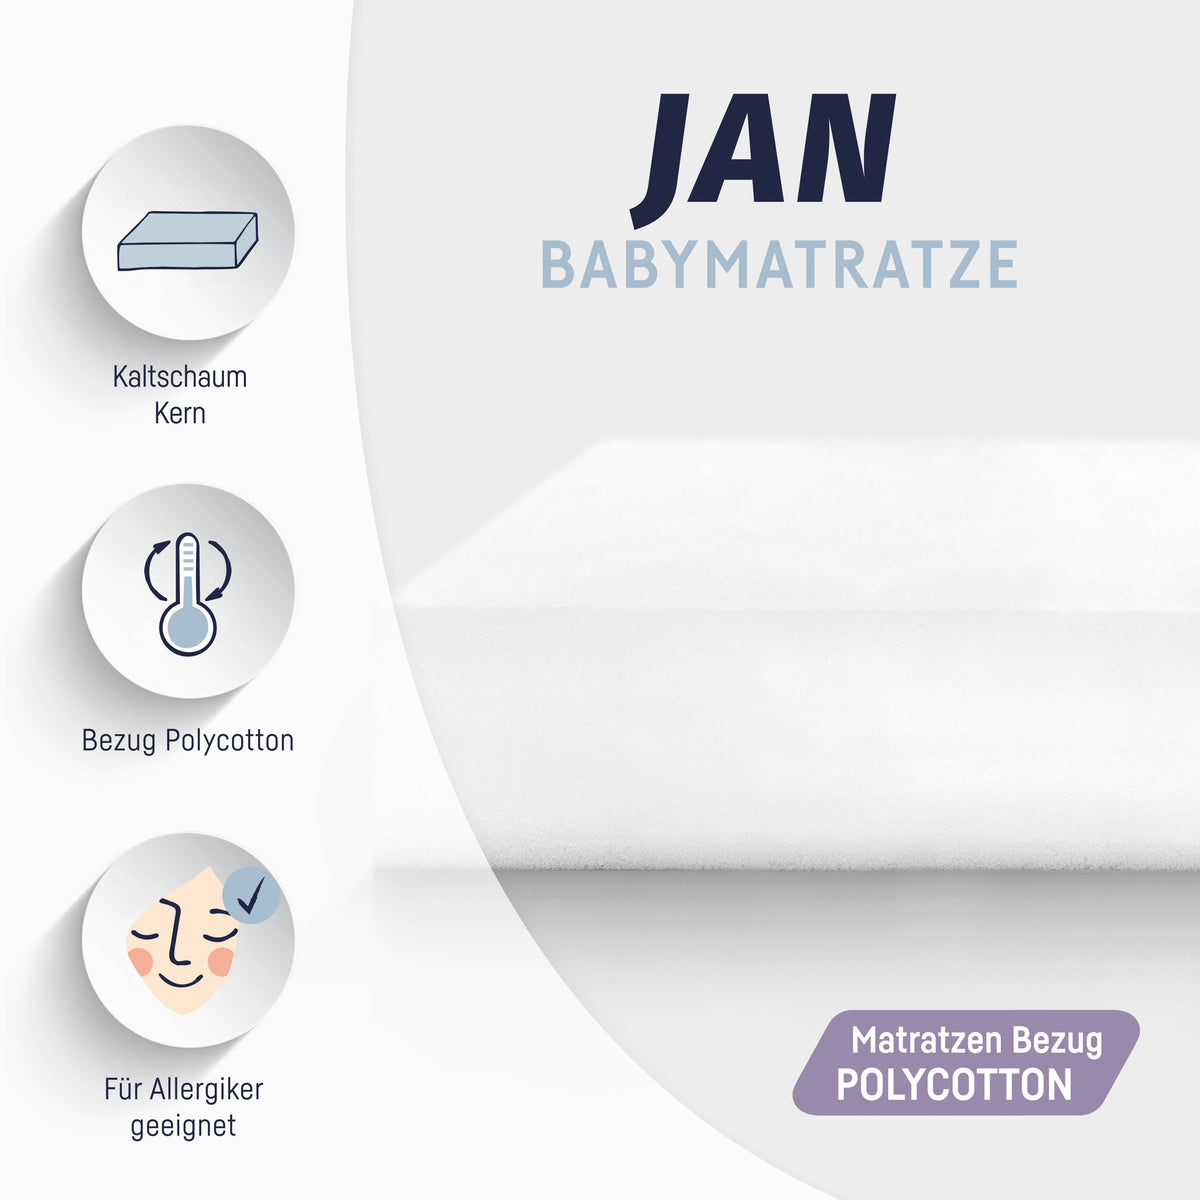 Babymatratze Jan – Julius Zöllner GmbH & Co KG